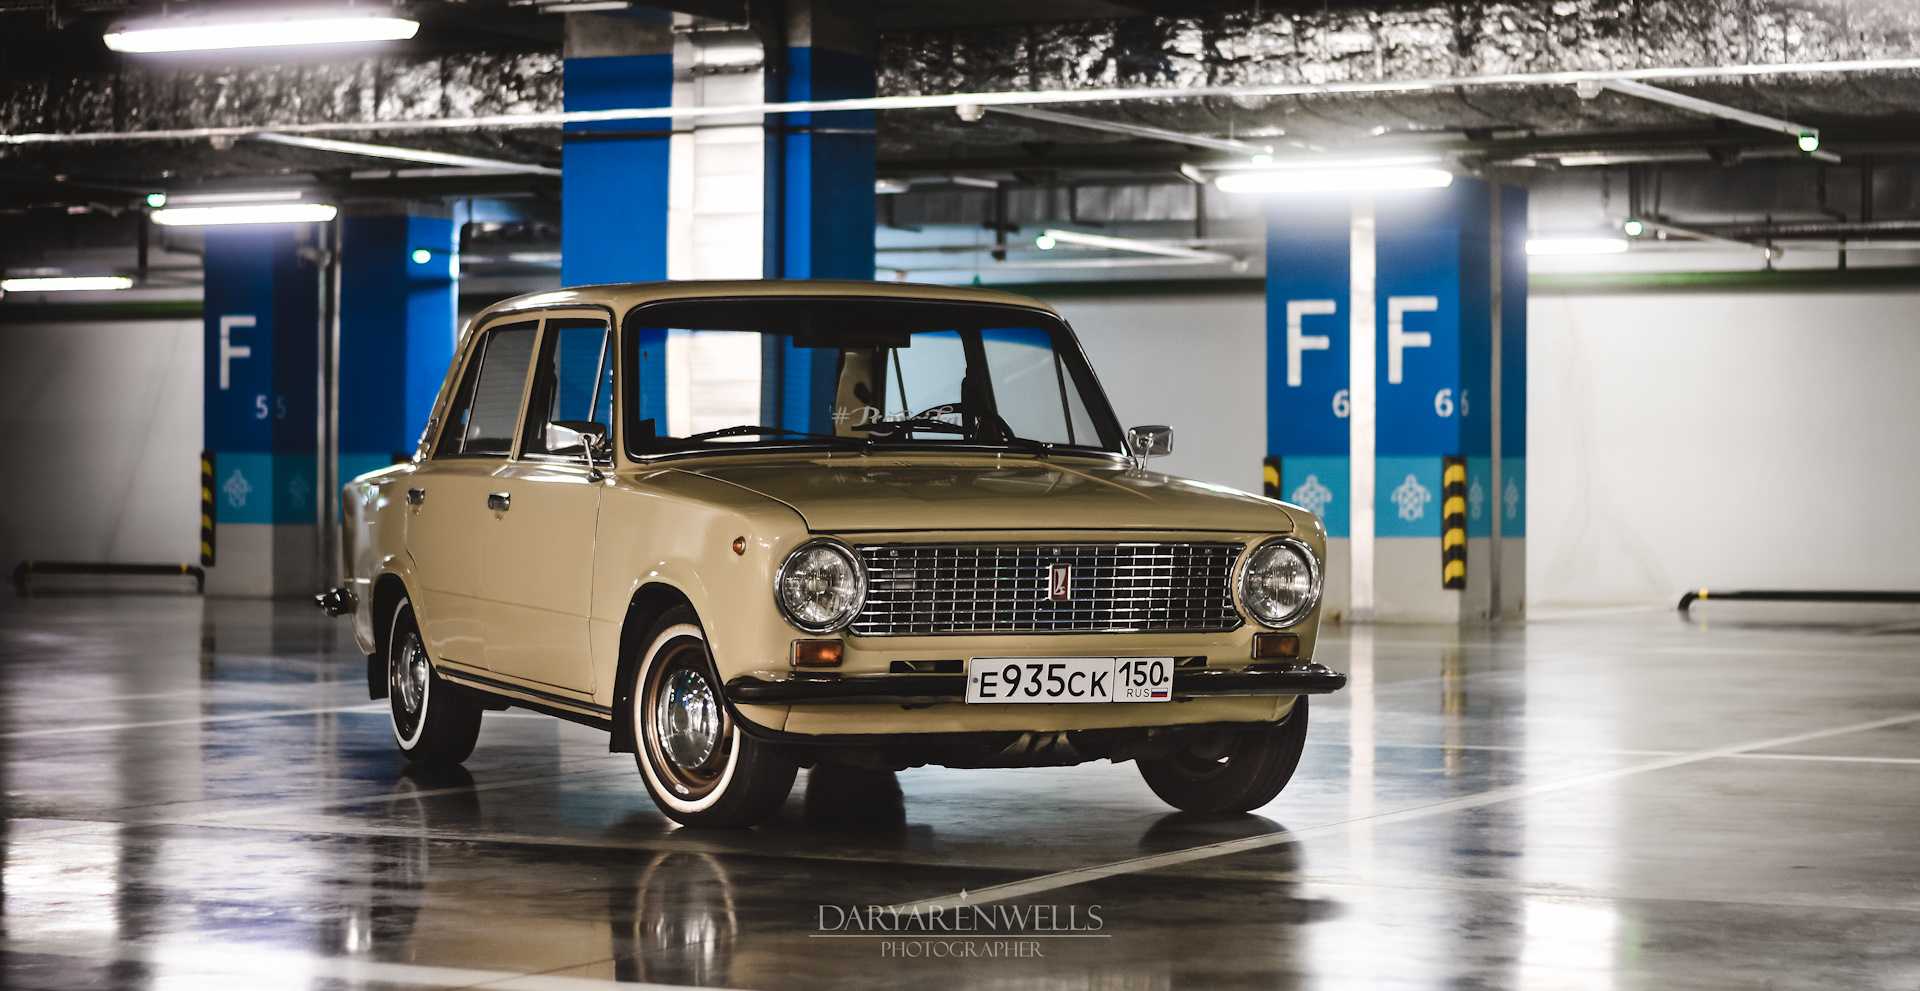 Классика советского автопрома ВАЗ 2106 (шестерка), заслужил любовь автолюбителей как дешевый в обслуживании автомобиль